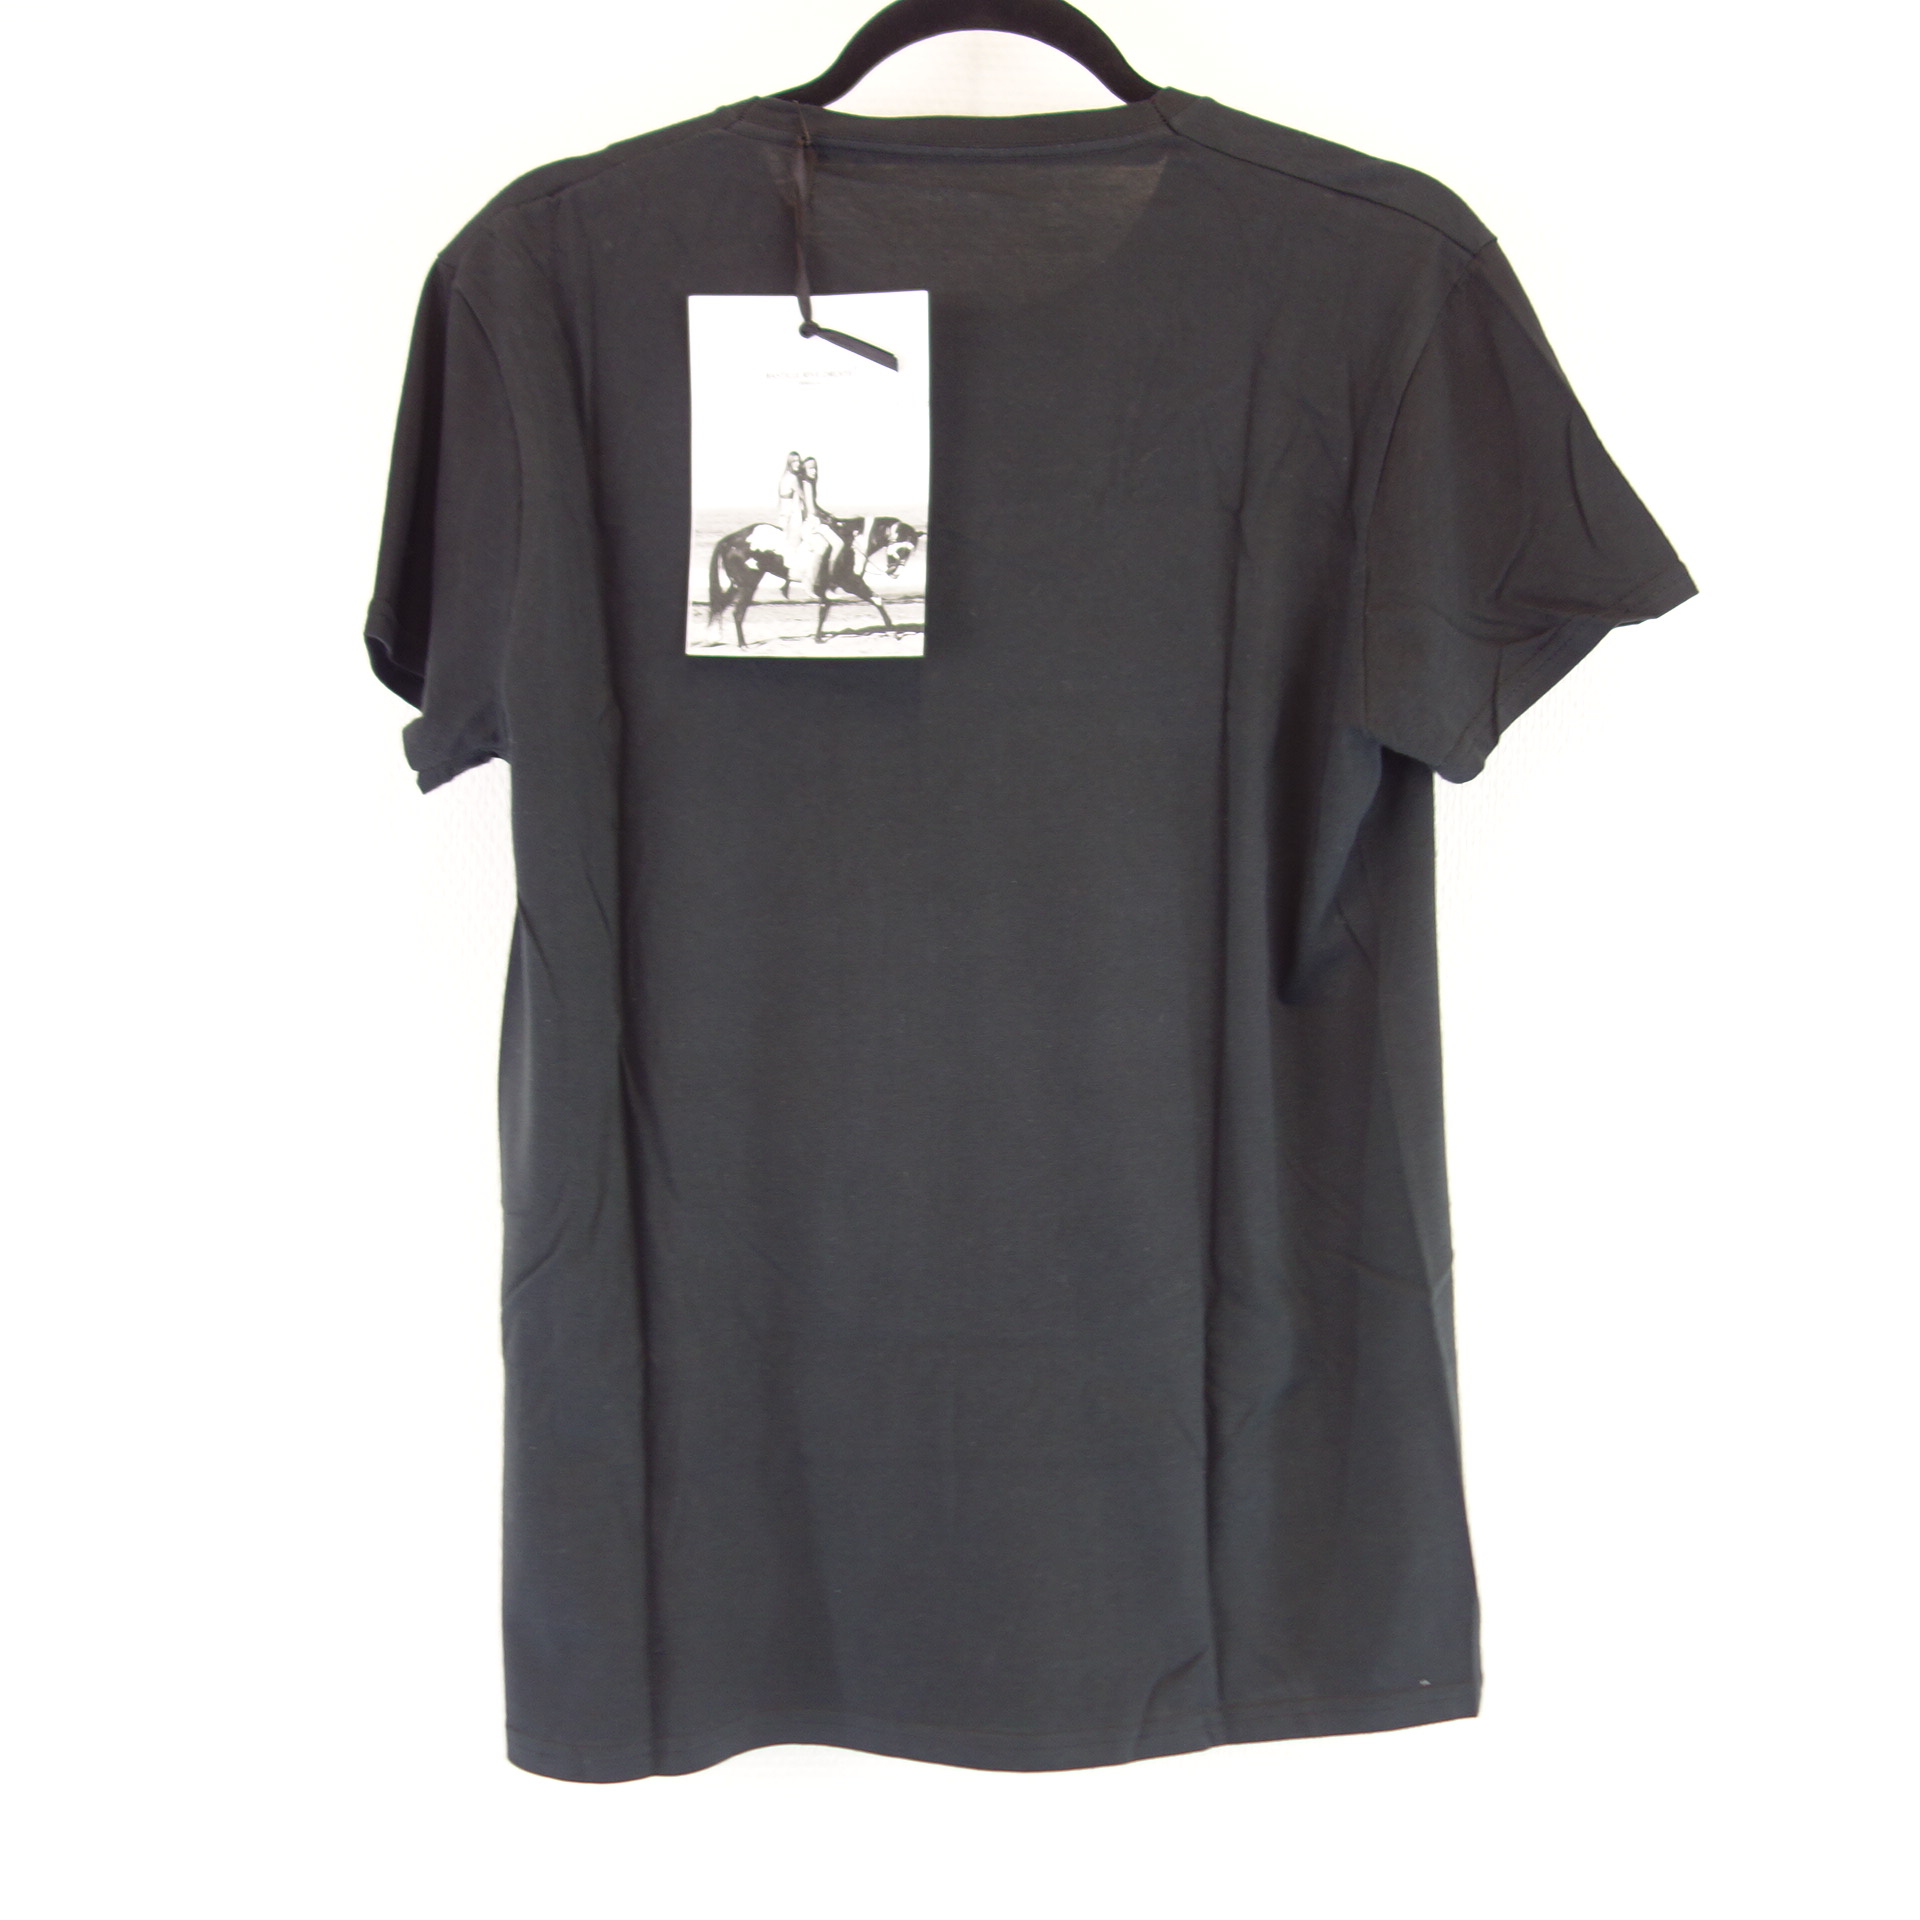 BASTILLE RIVE DROITE Herren T Shirt T-Shirt Oberteil Herrenshirt Schwarz Print Modell Bel Air